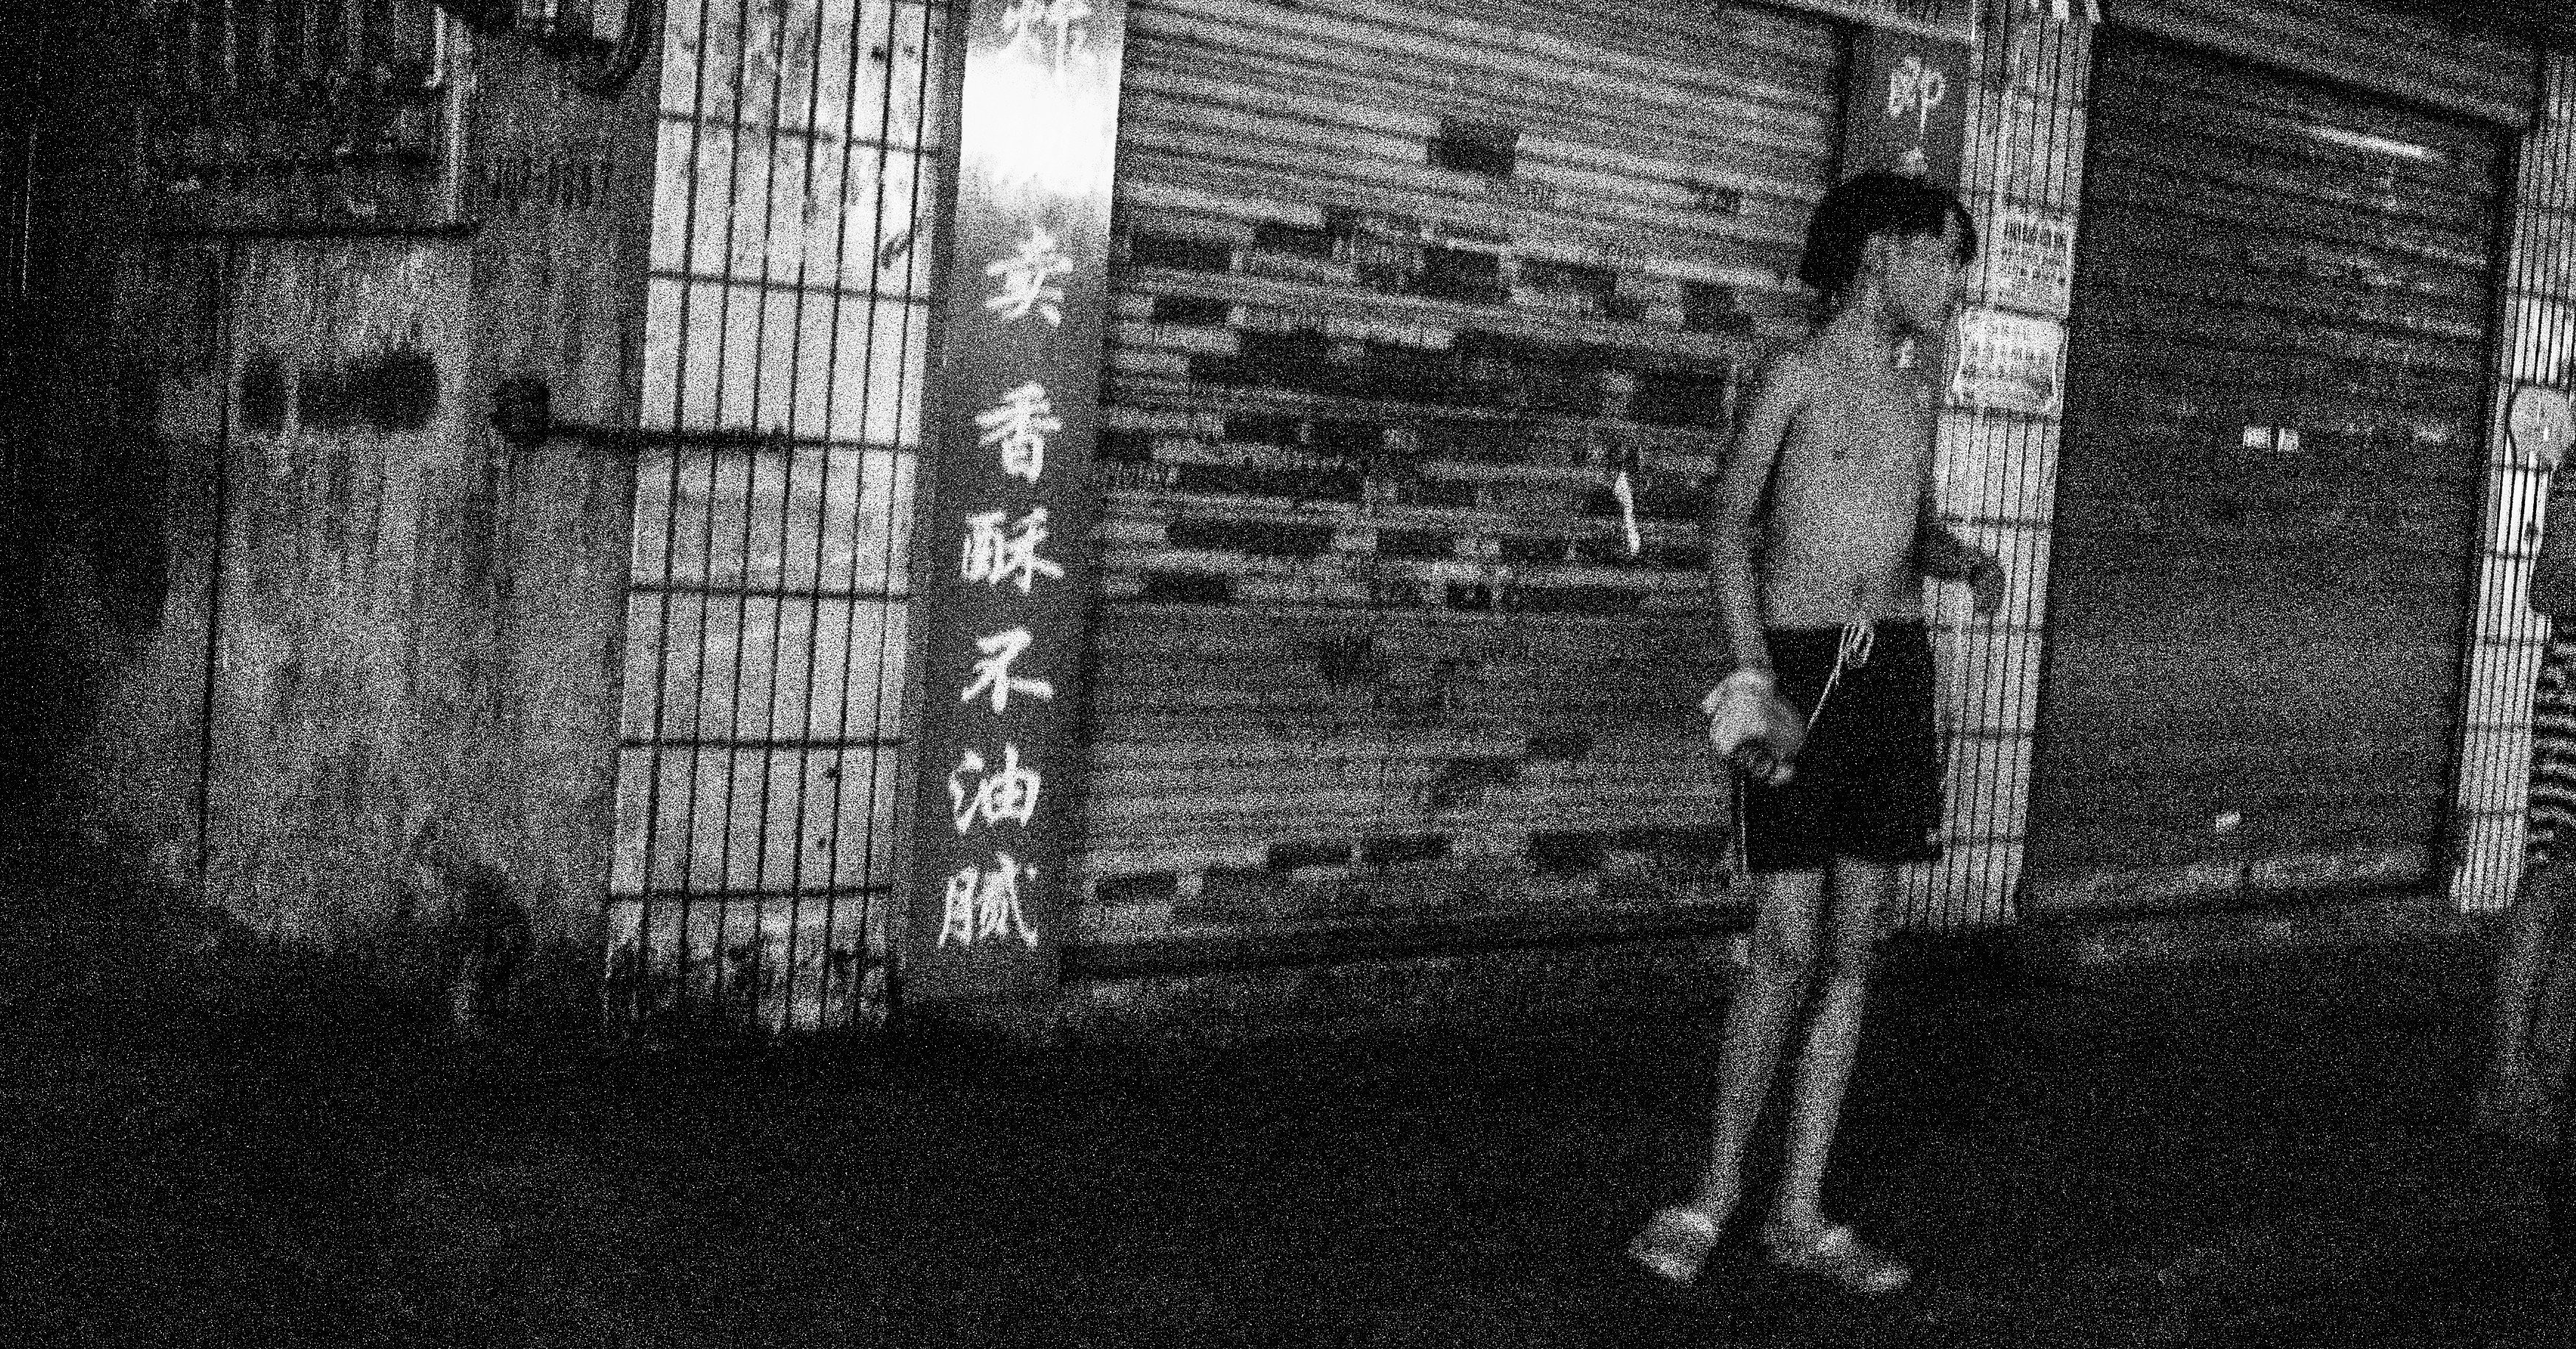 中国 武漢の 路地裏 で撮り歩いた写真を公開します Vanhop 写真家 音楽セラピスト Note